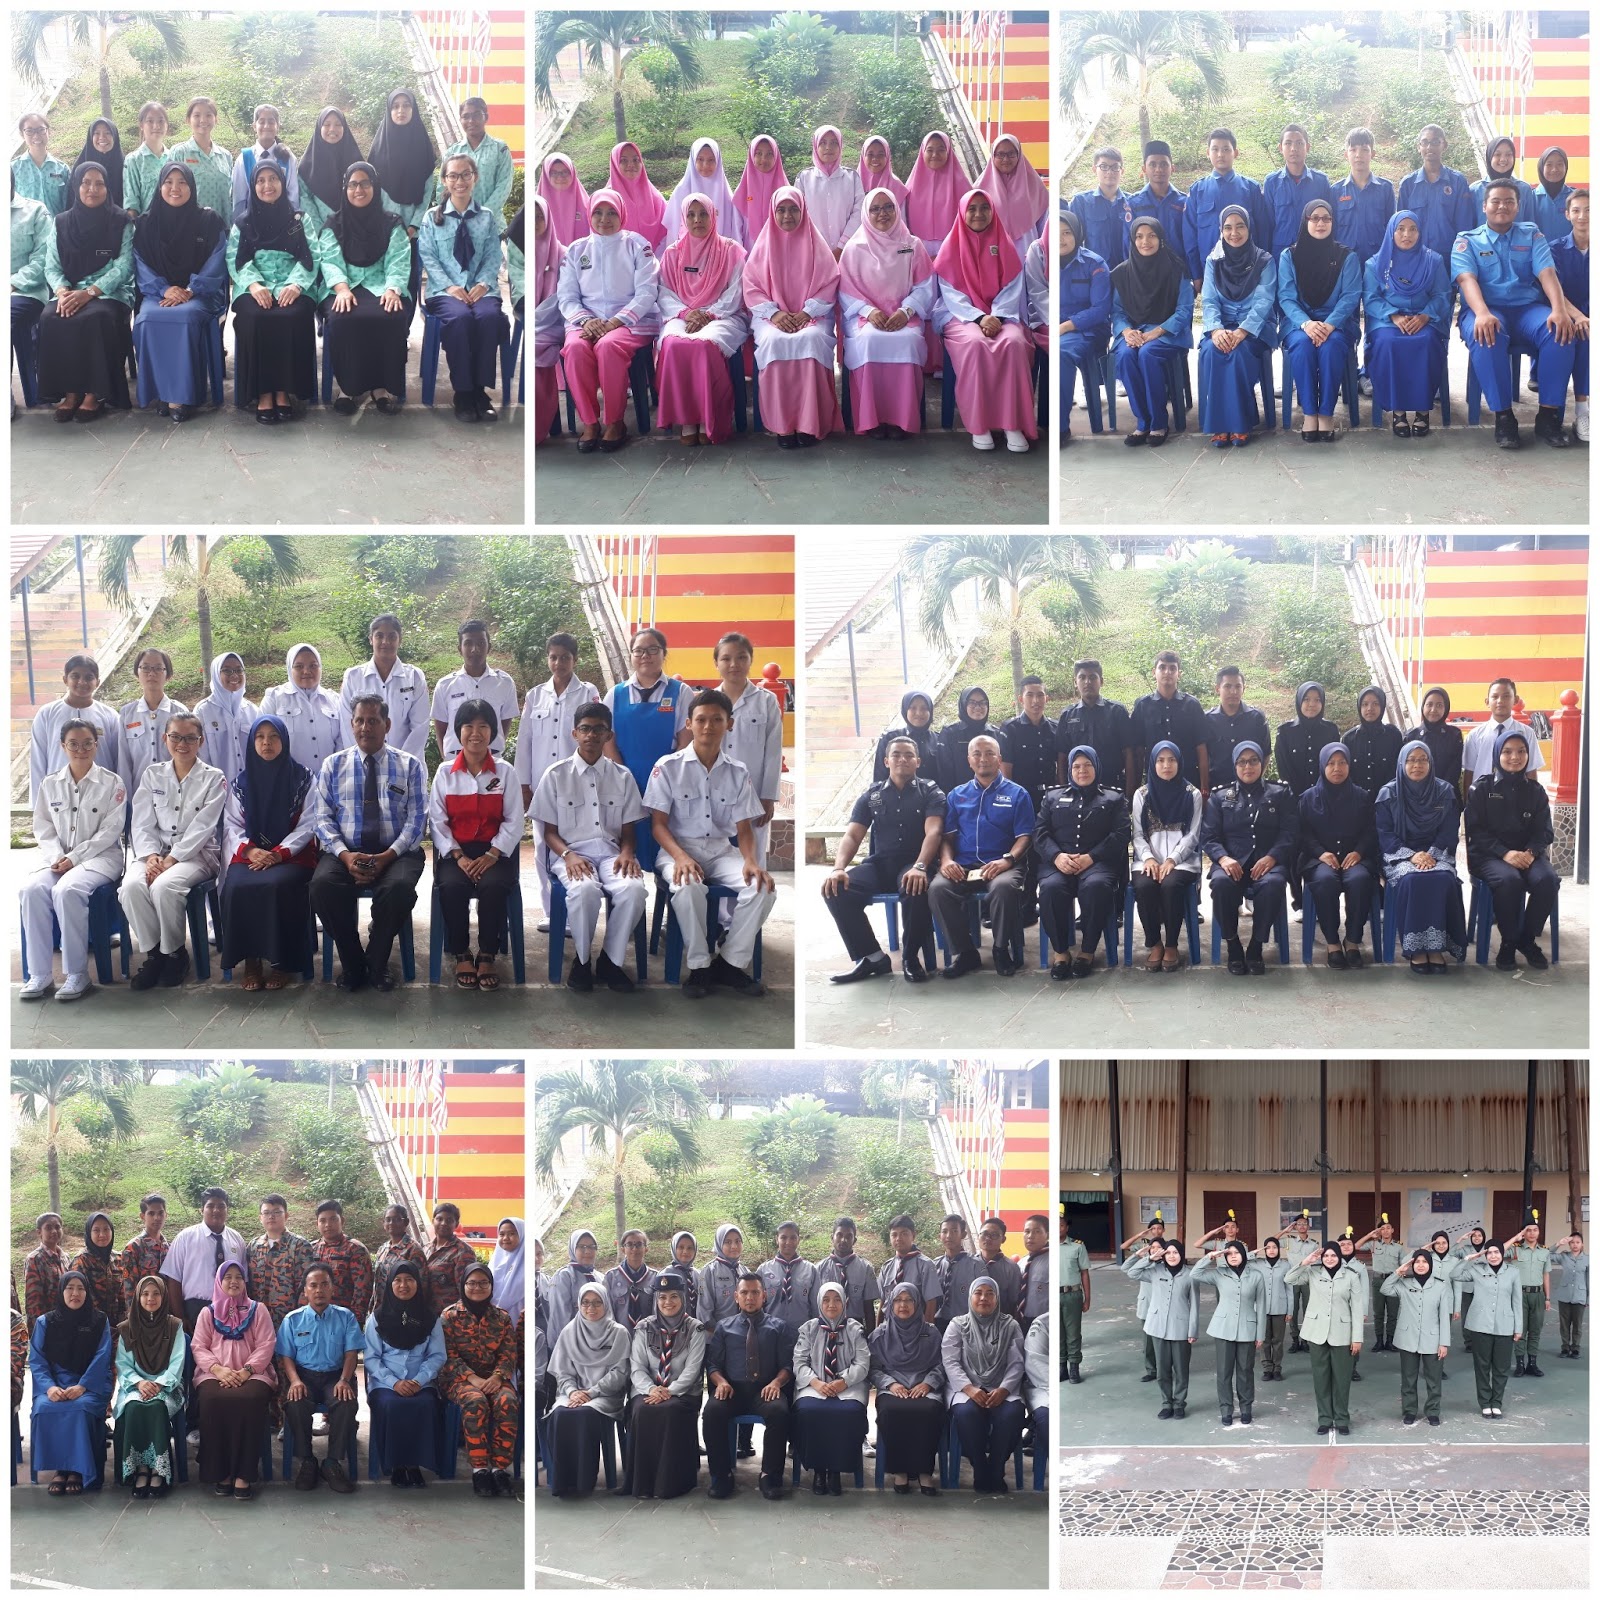 Sekolah Menengah Kebangsaan Dato Haji Kamaruddin Mesyuarat Agung Unit Beruniform 1 2018